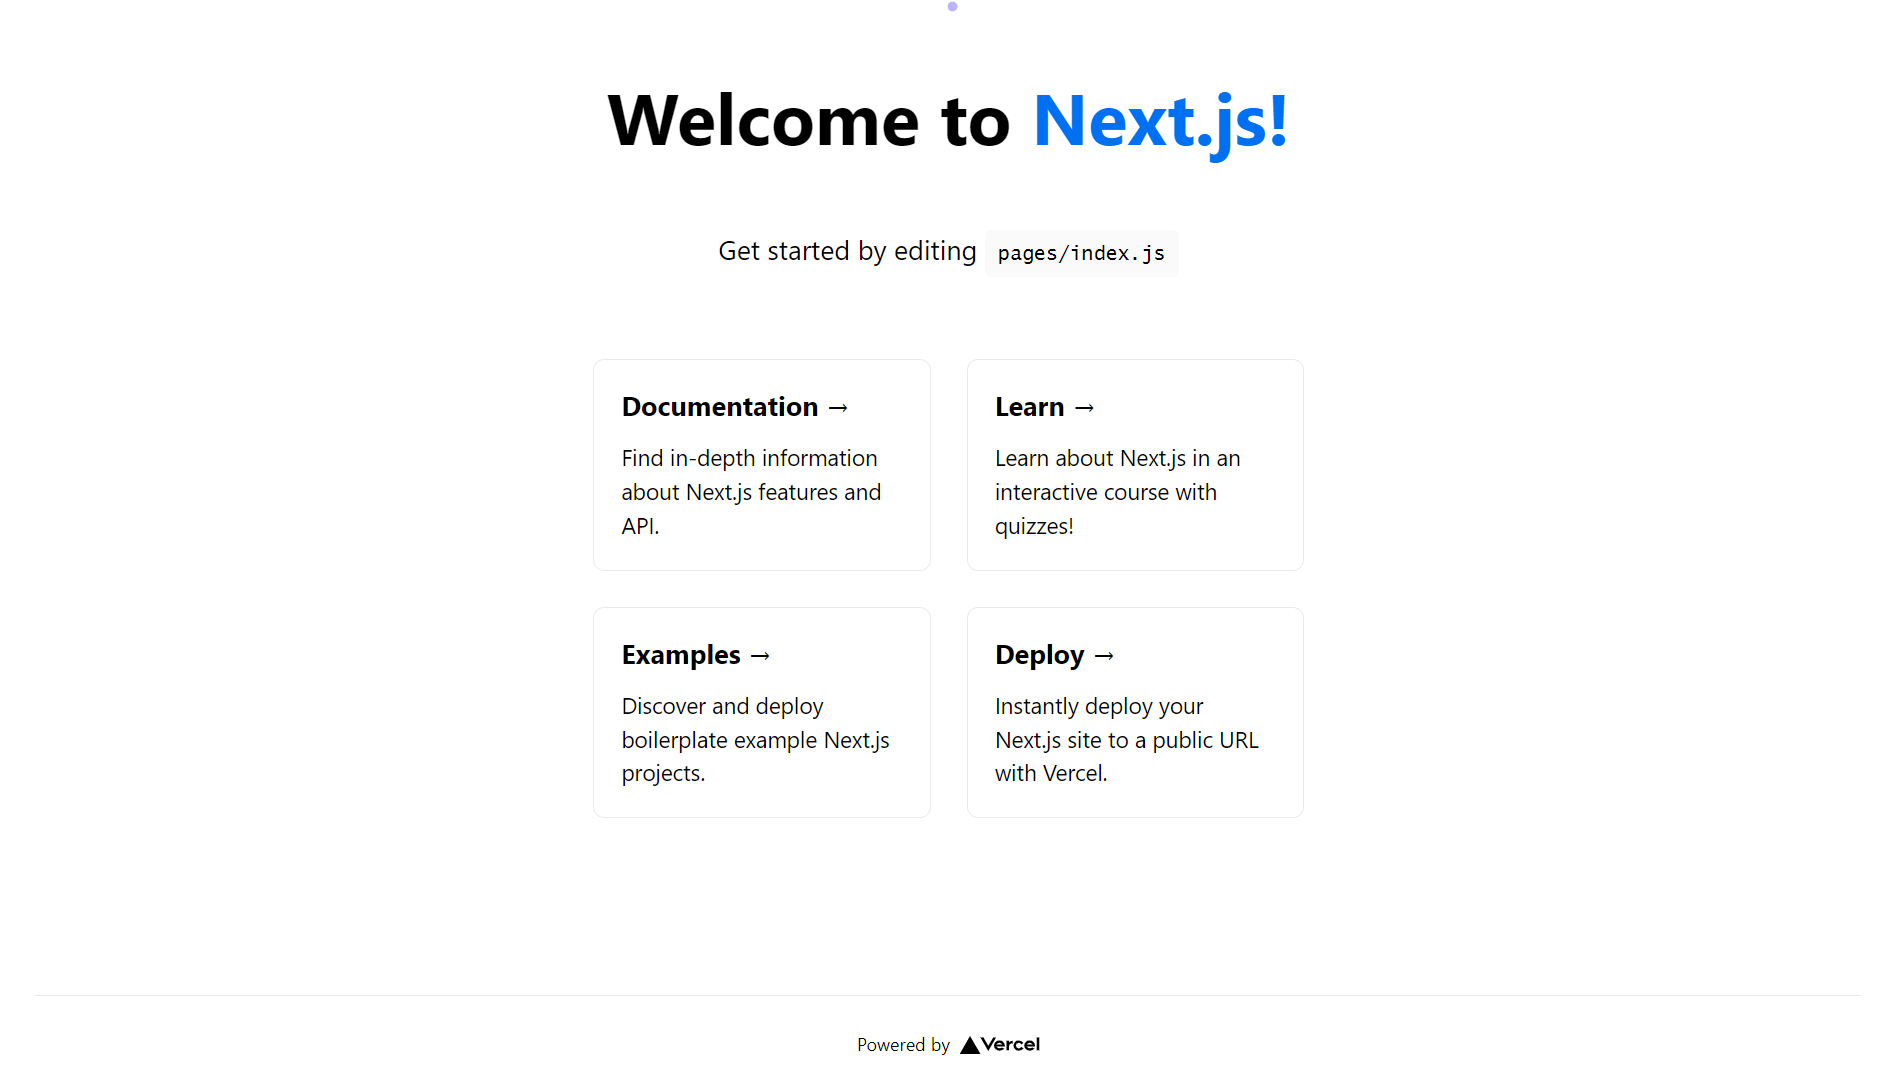 demo of Next.js app